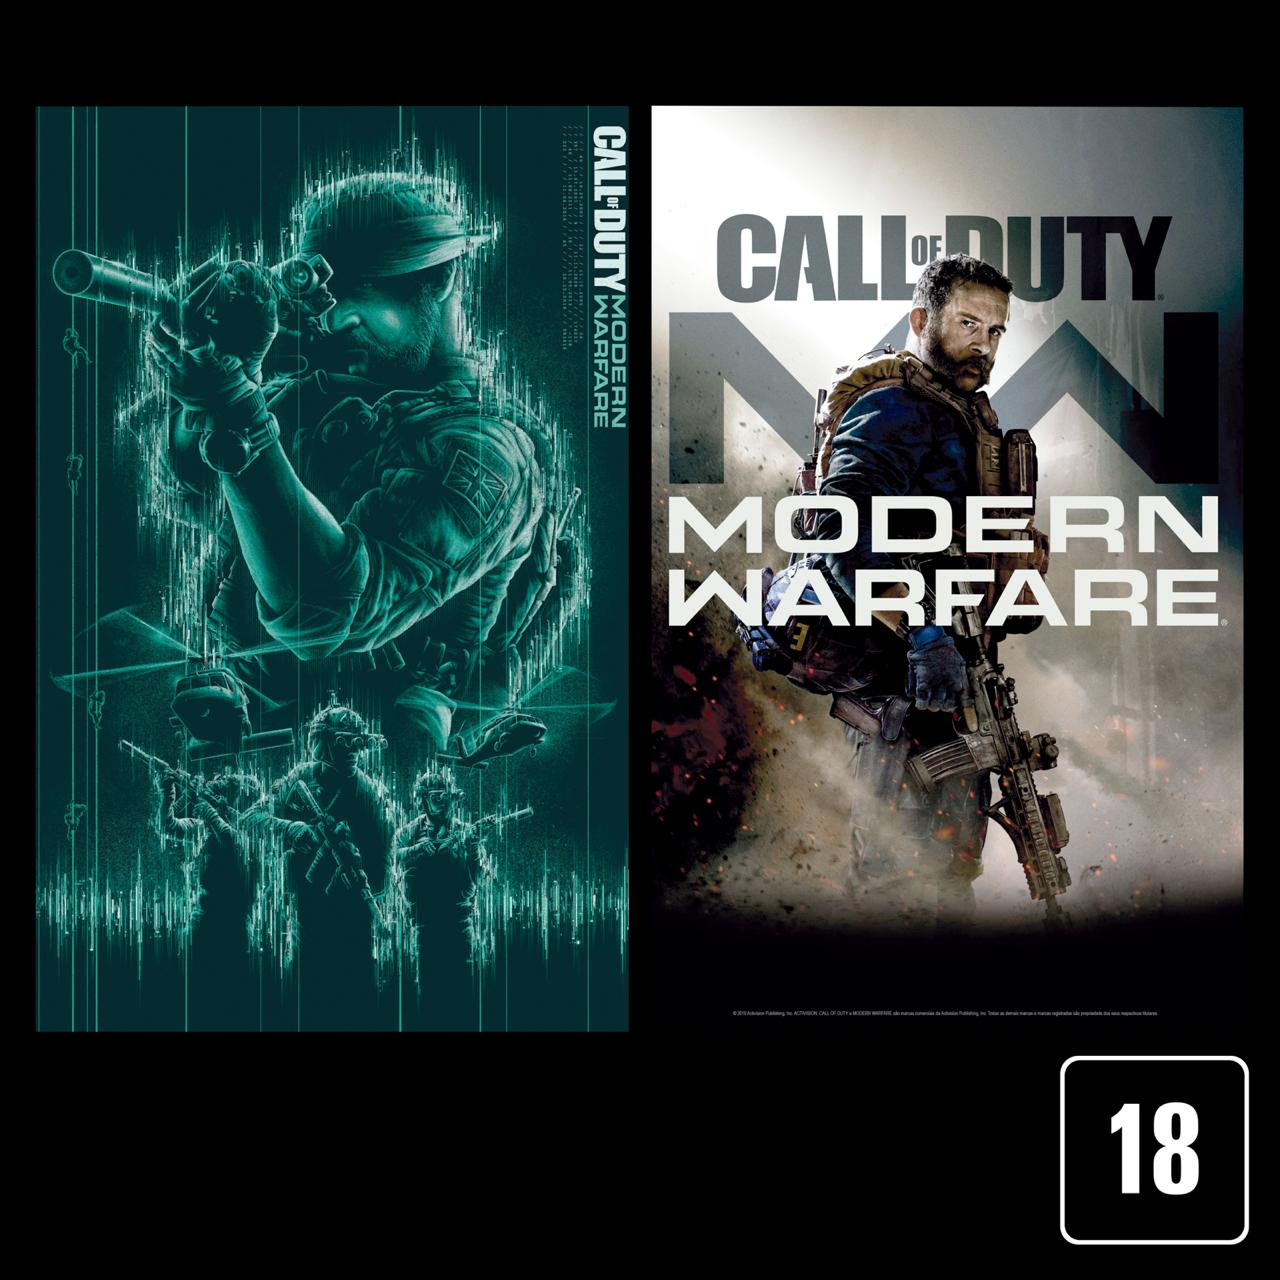 Call of Duty Modern Warfare ganhará edições especiais exclusivas no Brasil